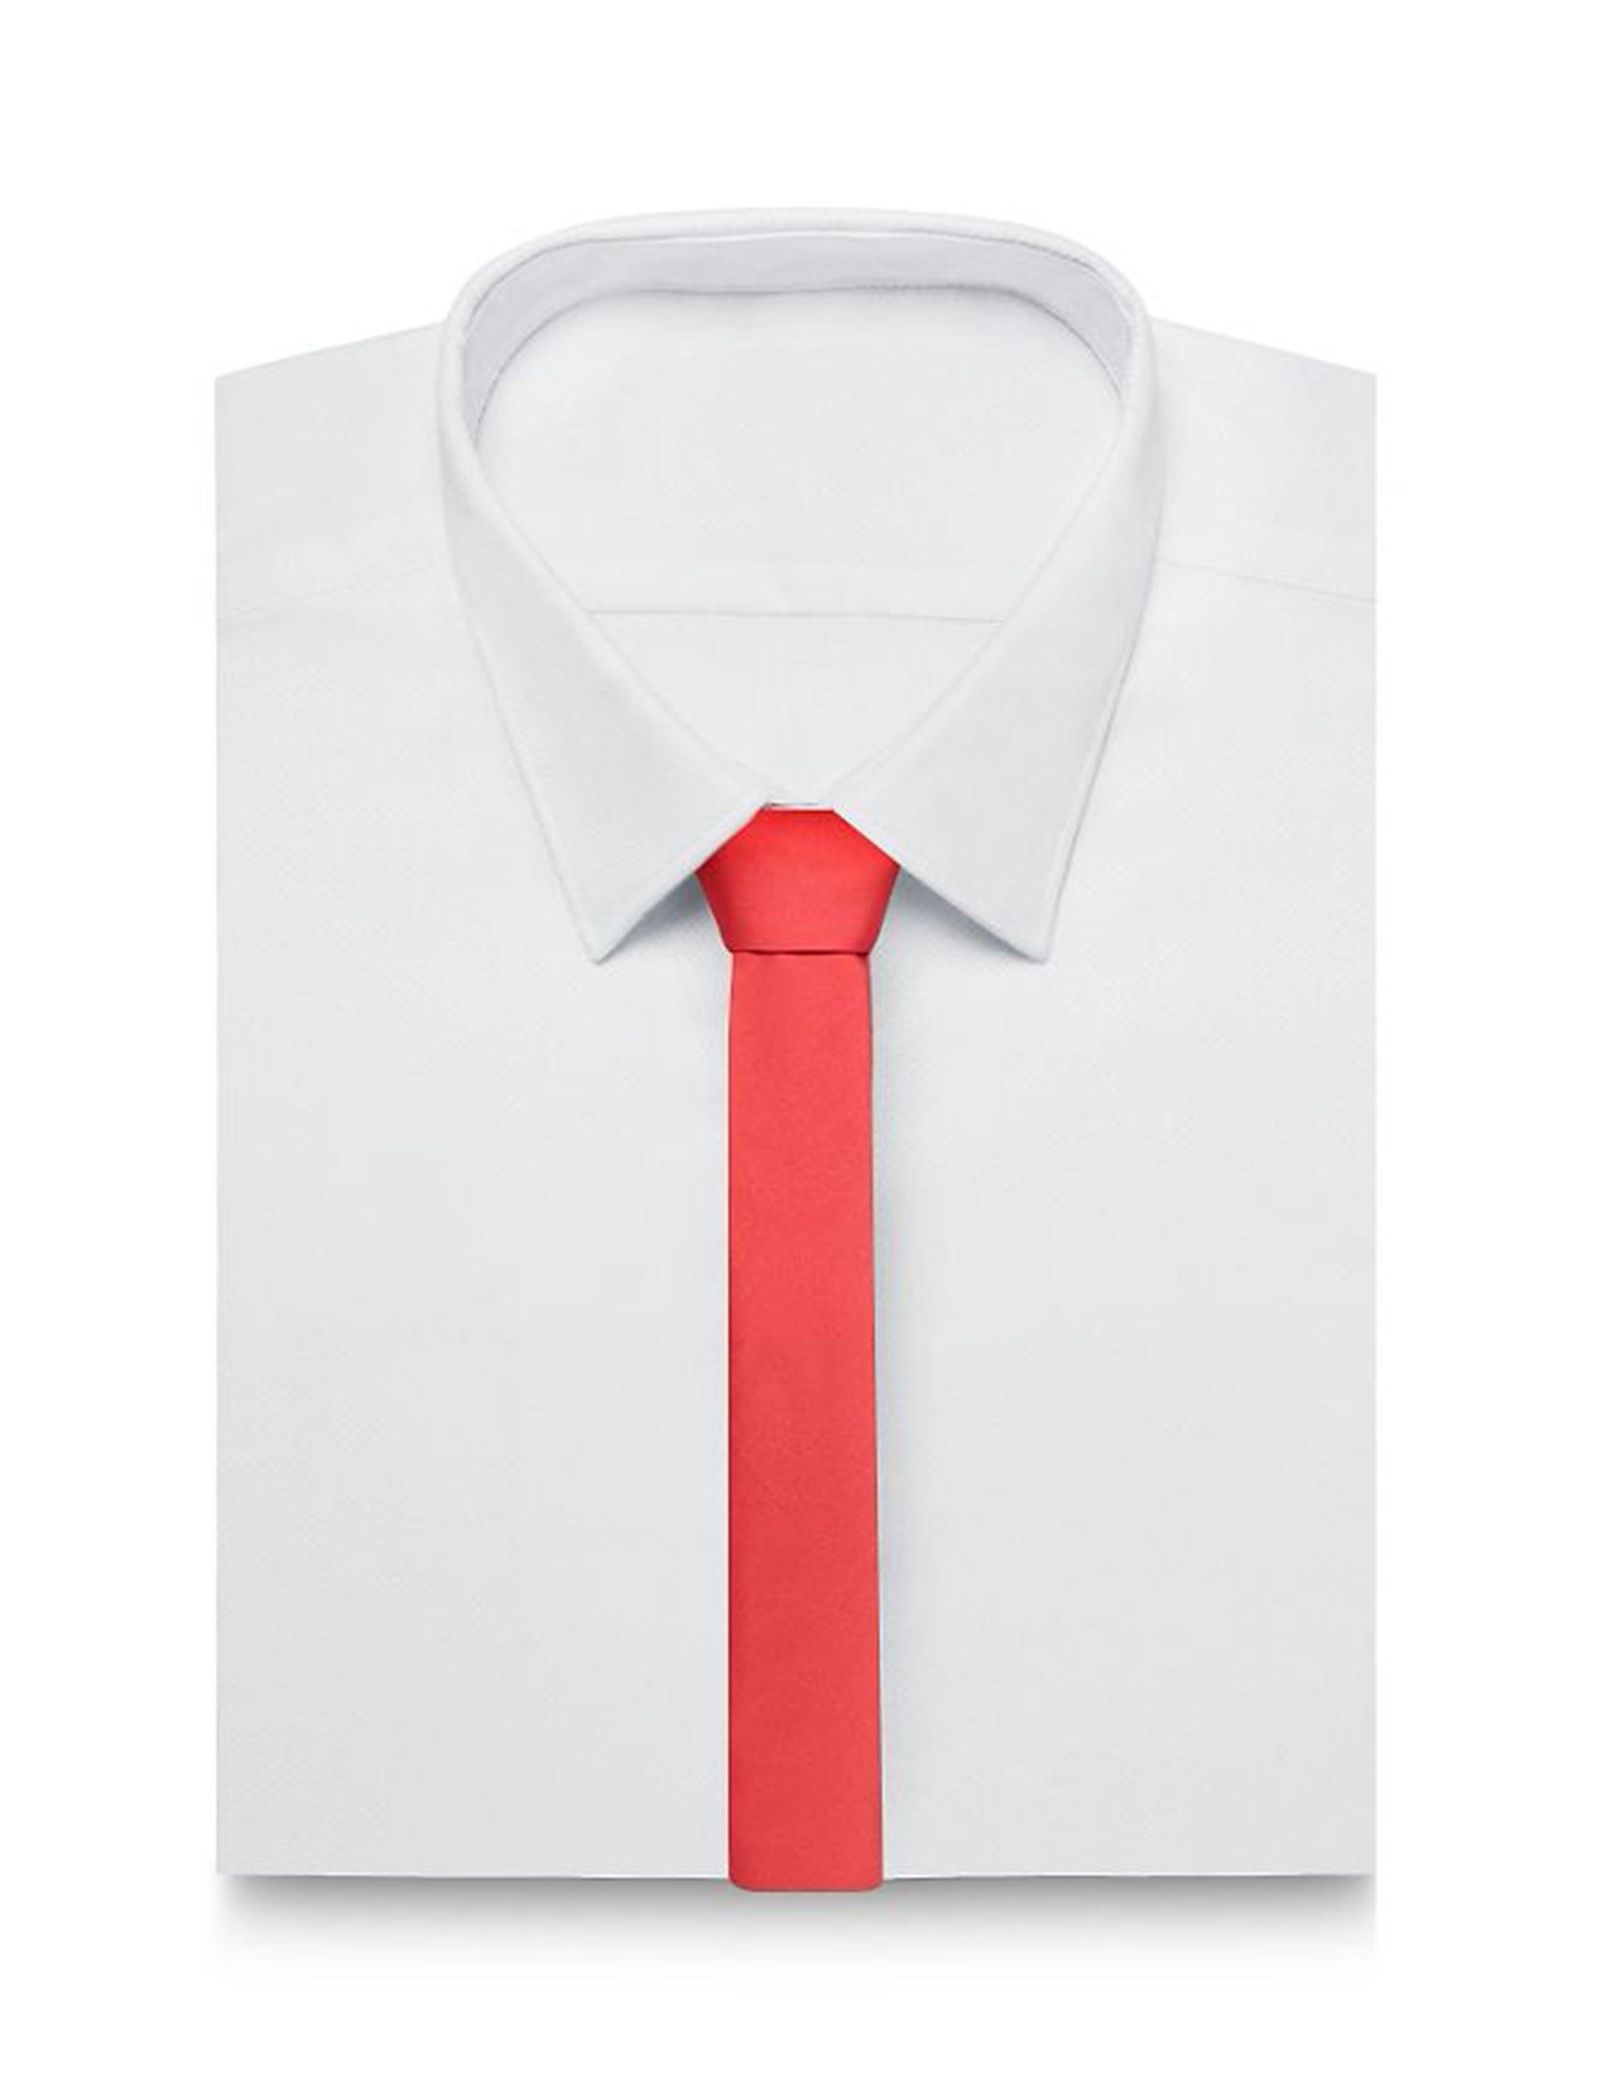 کراوات ساده مردانه - رد هرینگ - قرمز - 3